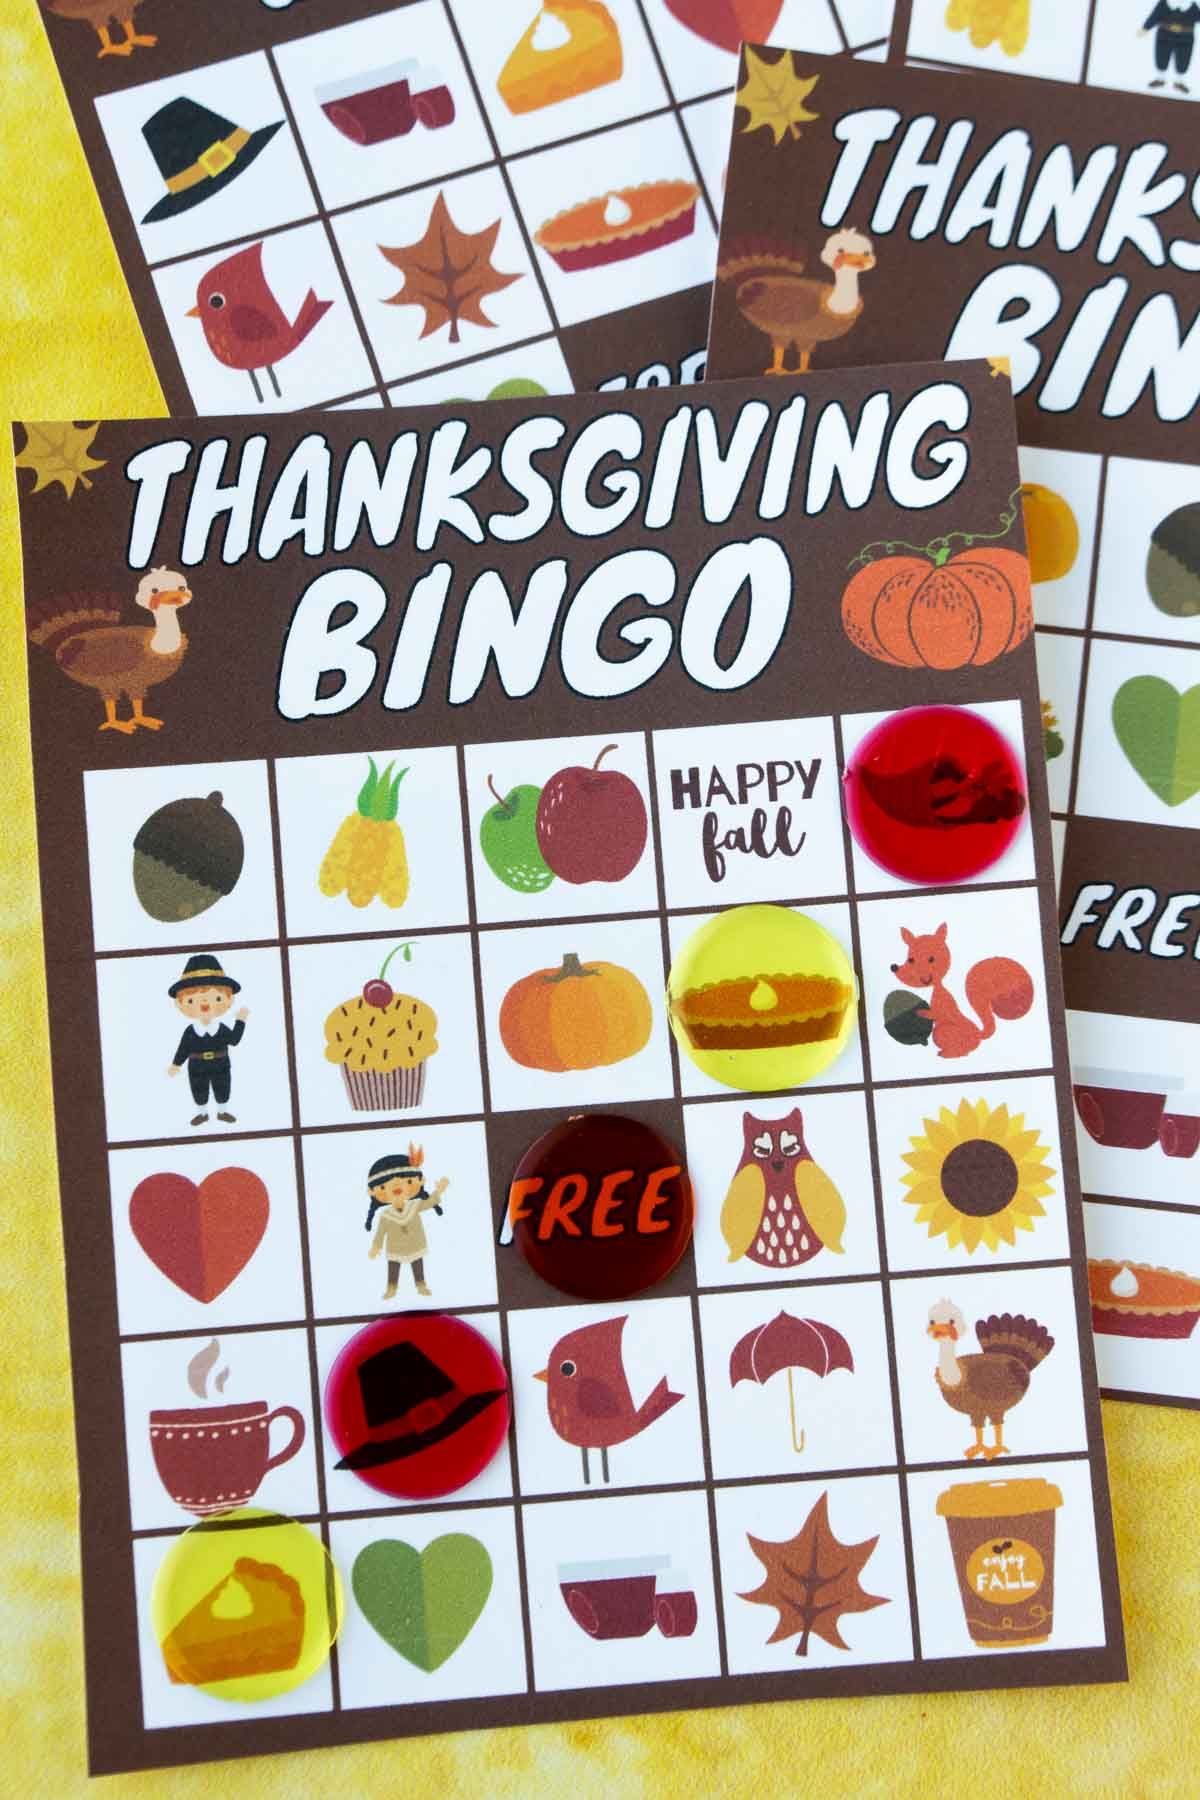 Tarjeta de bingo de acción de gracias con marcadores de bingo